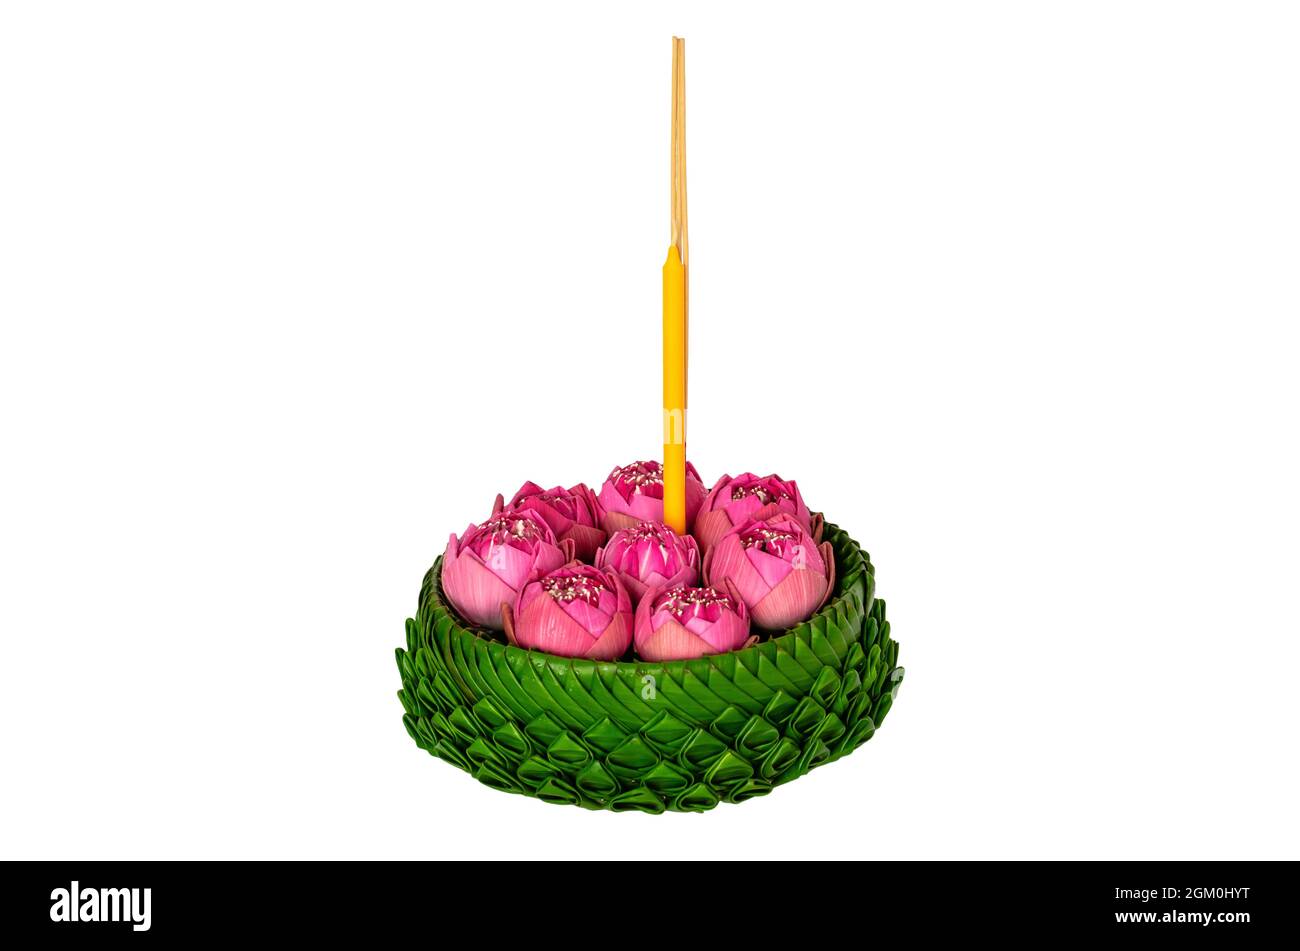 Banana foglia Krathong che hanno 3 bastoni incenso e candela decorati con fiori rosa di loto per Thailandia piena luna o Loy Krathong festival isolato Foto Stock